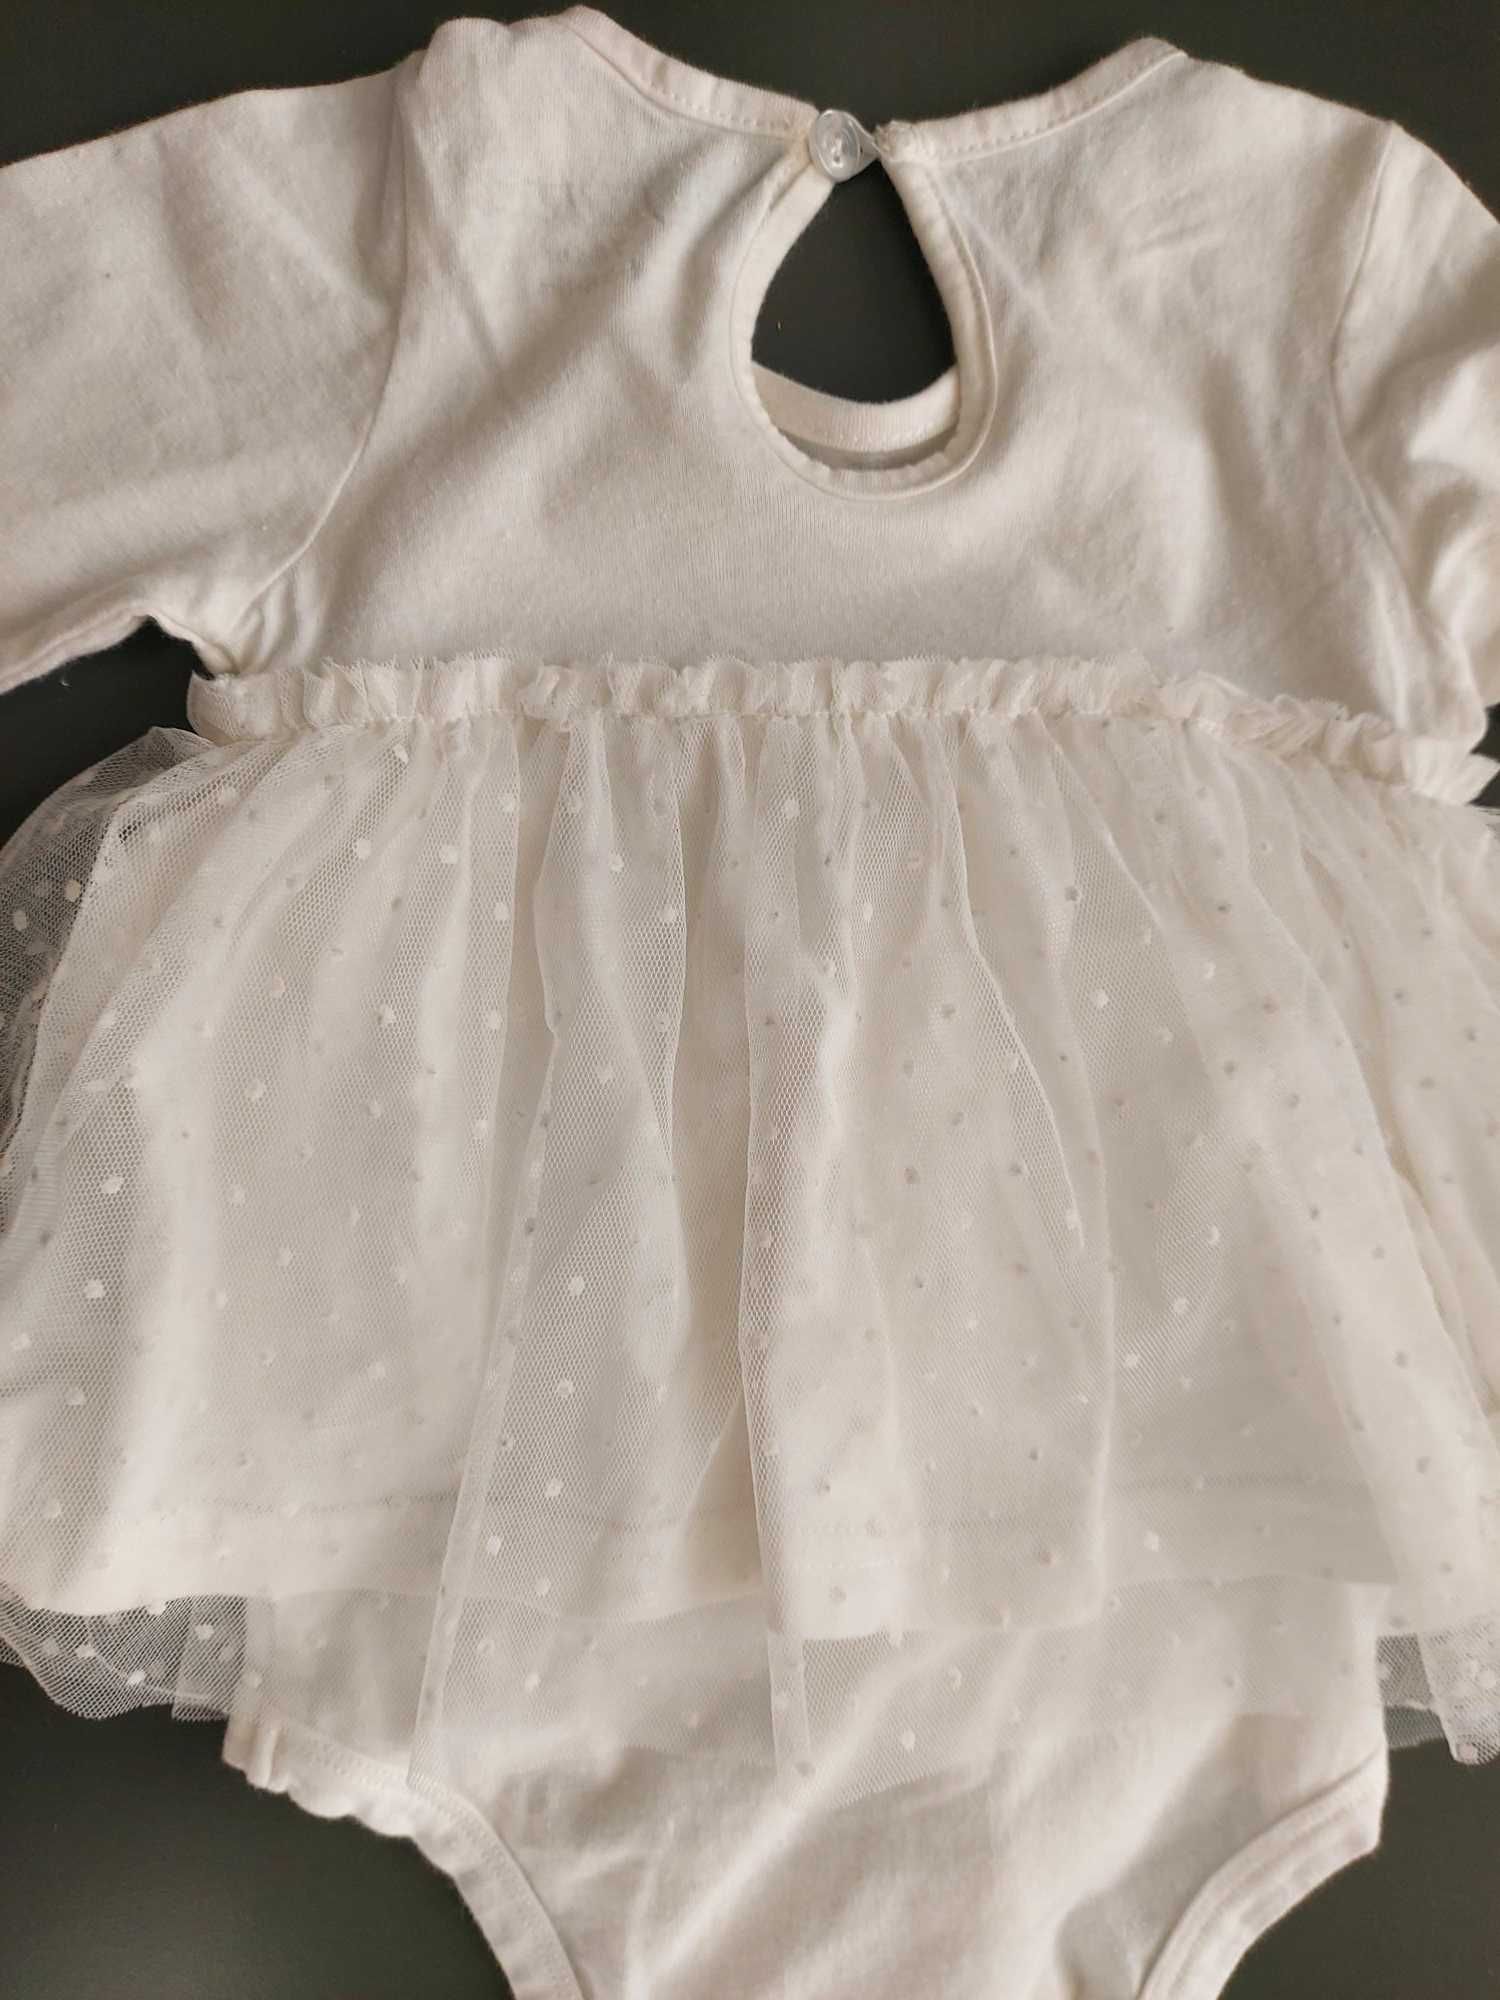 Sukienka biała, body, chrzciny, chrzest tiul r. 74, 6-9 miesięcy